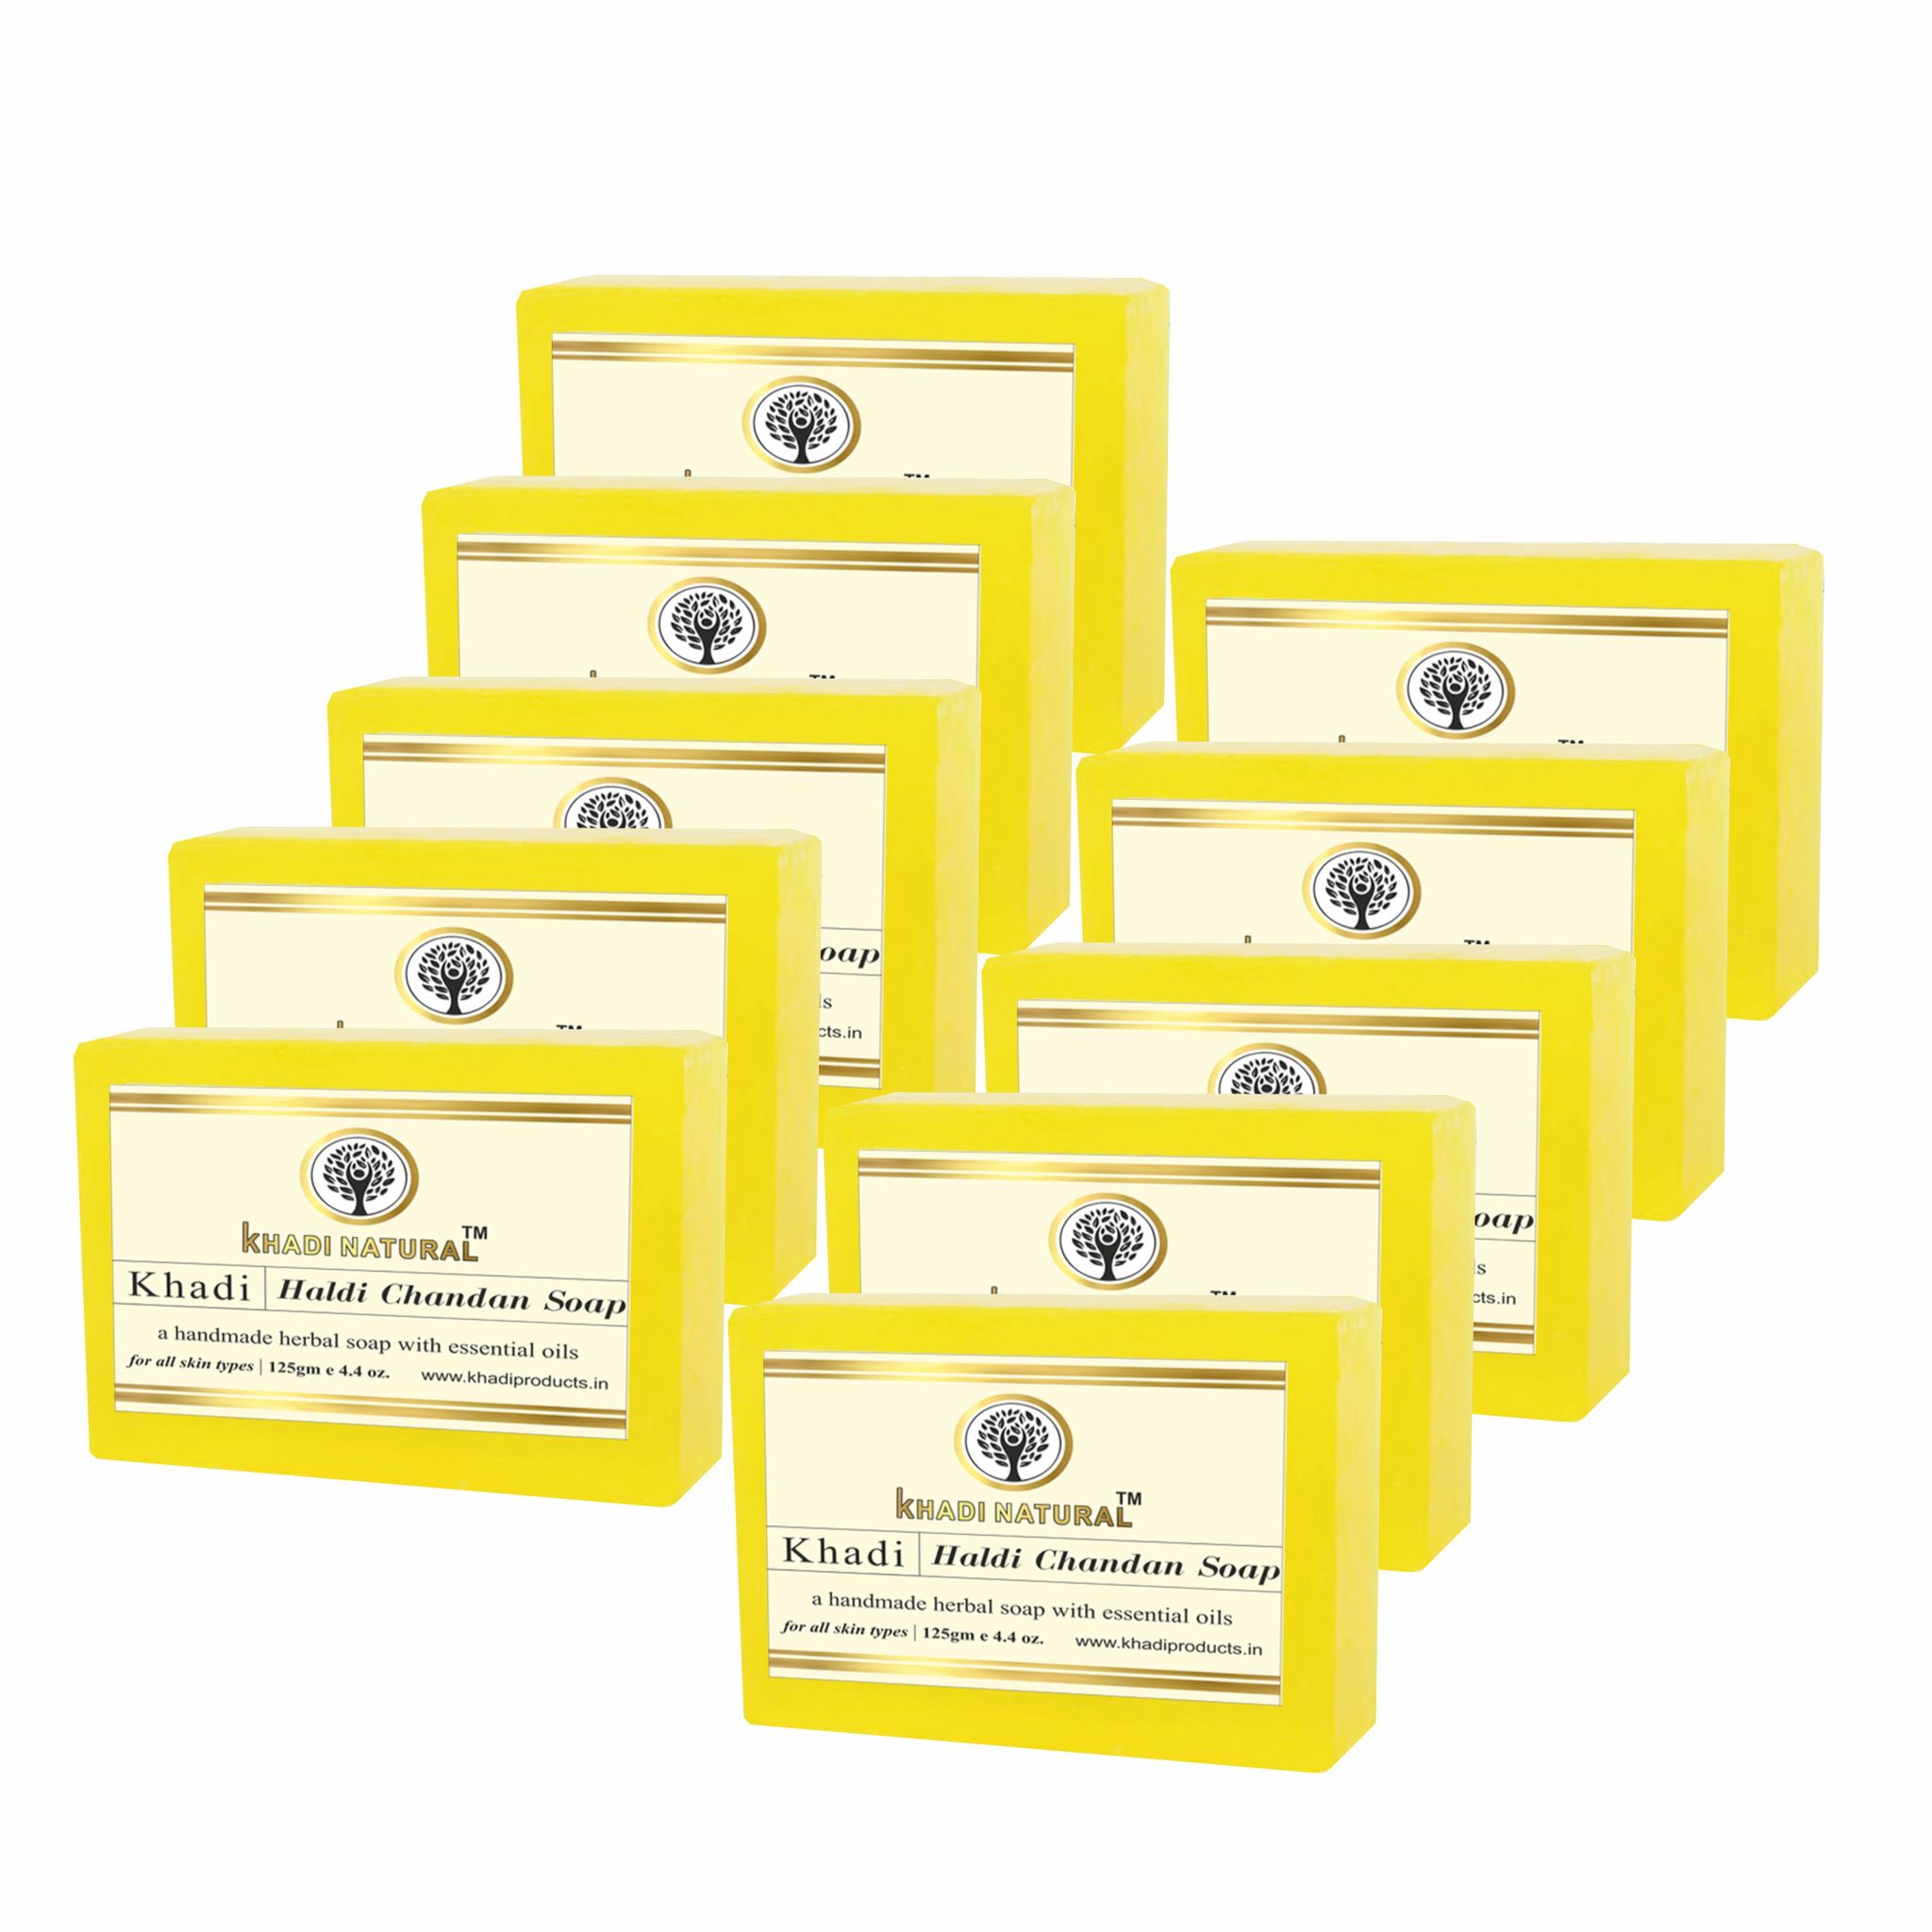 Khadi Natural Haldi Chandan Soap 125g (Pack of 10) - Ayurvedic Bliss for Skin Care